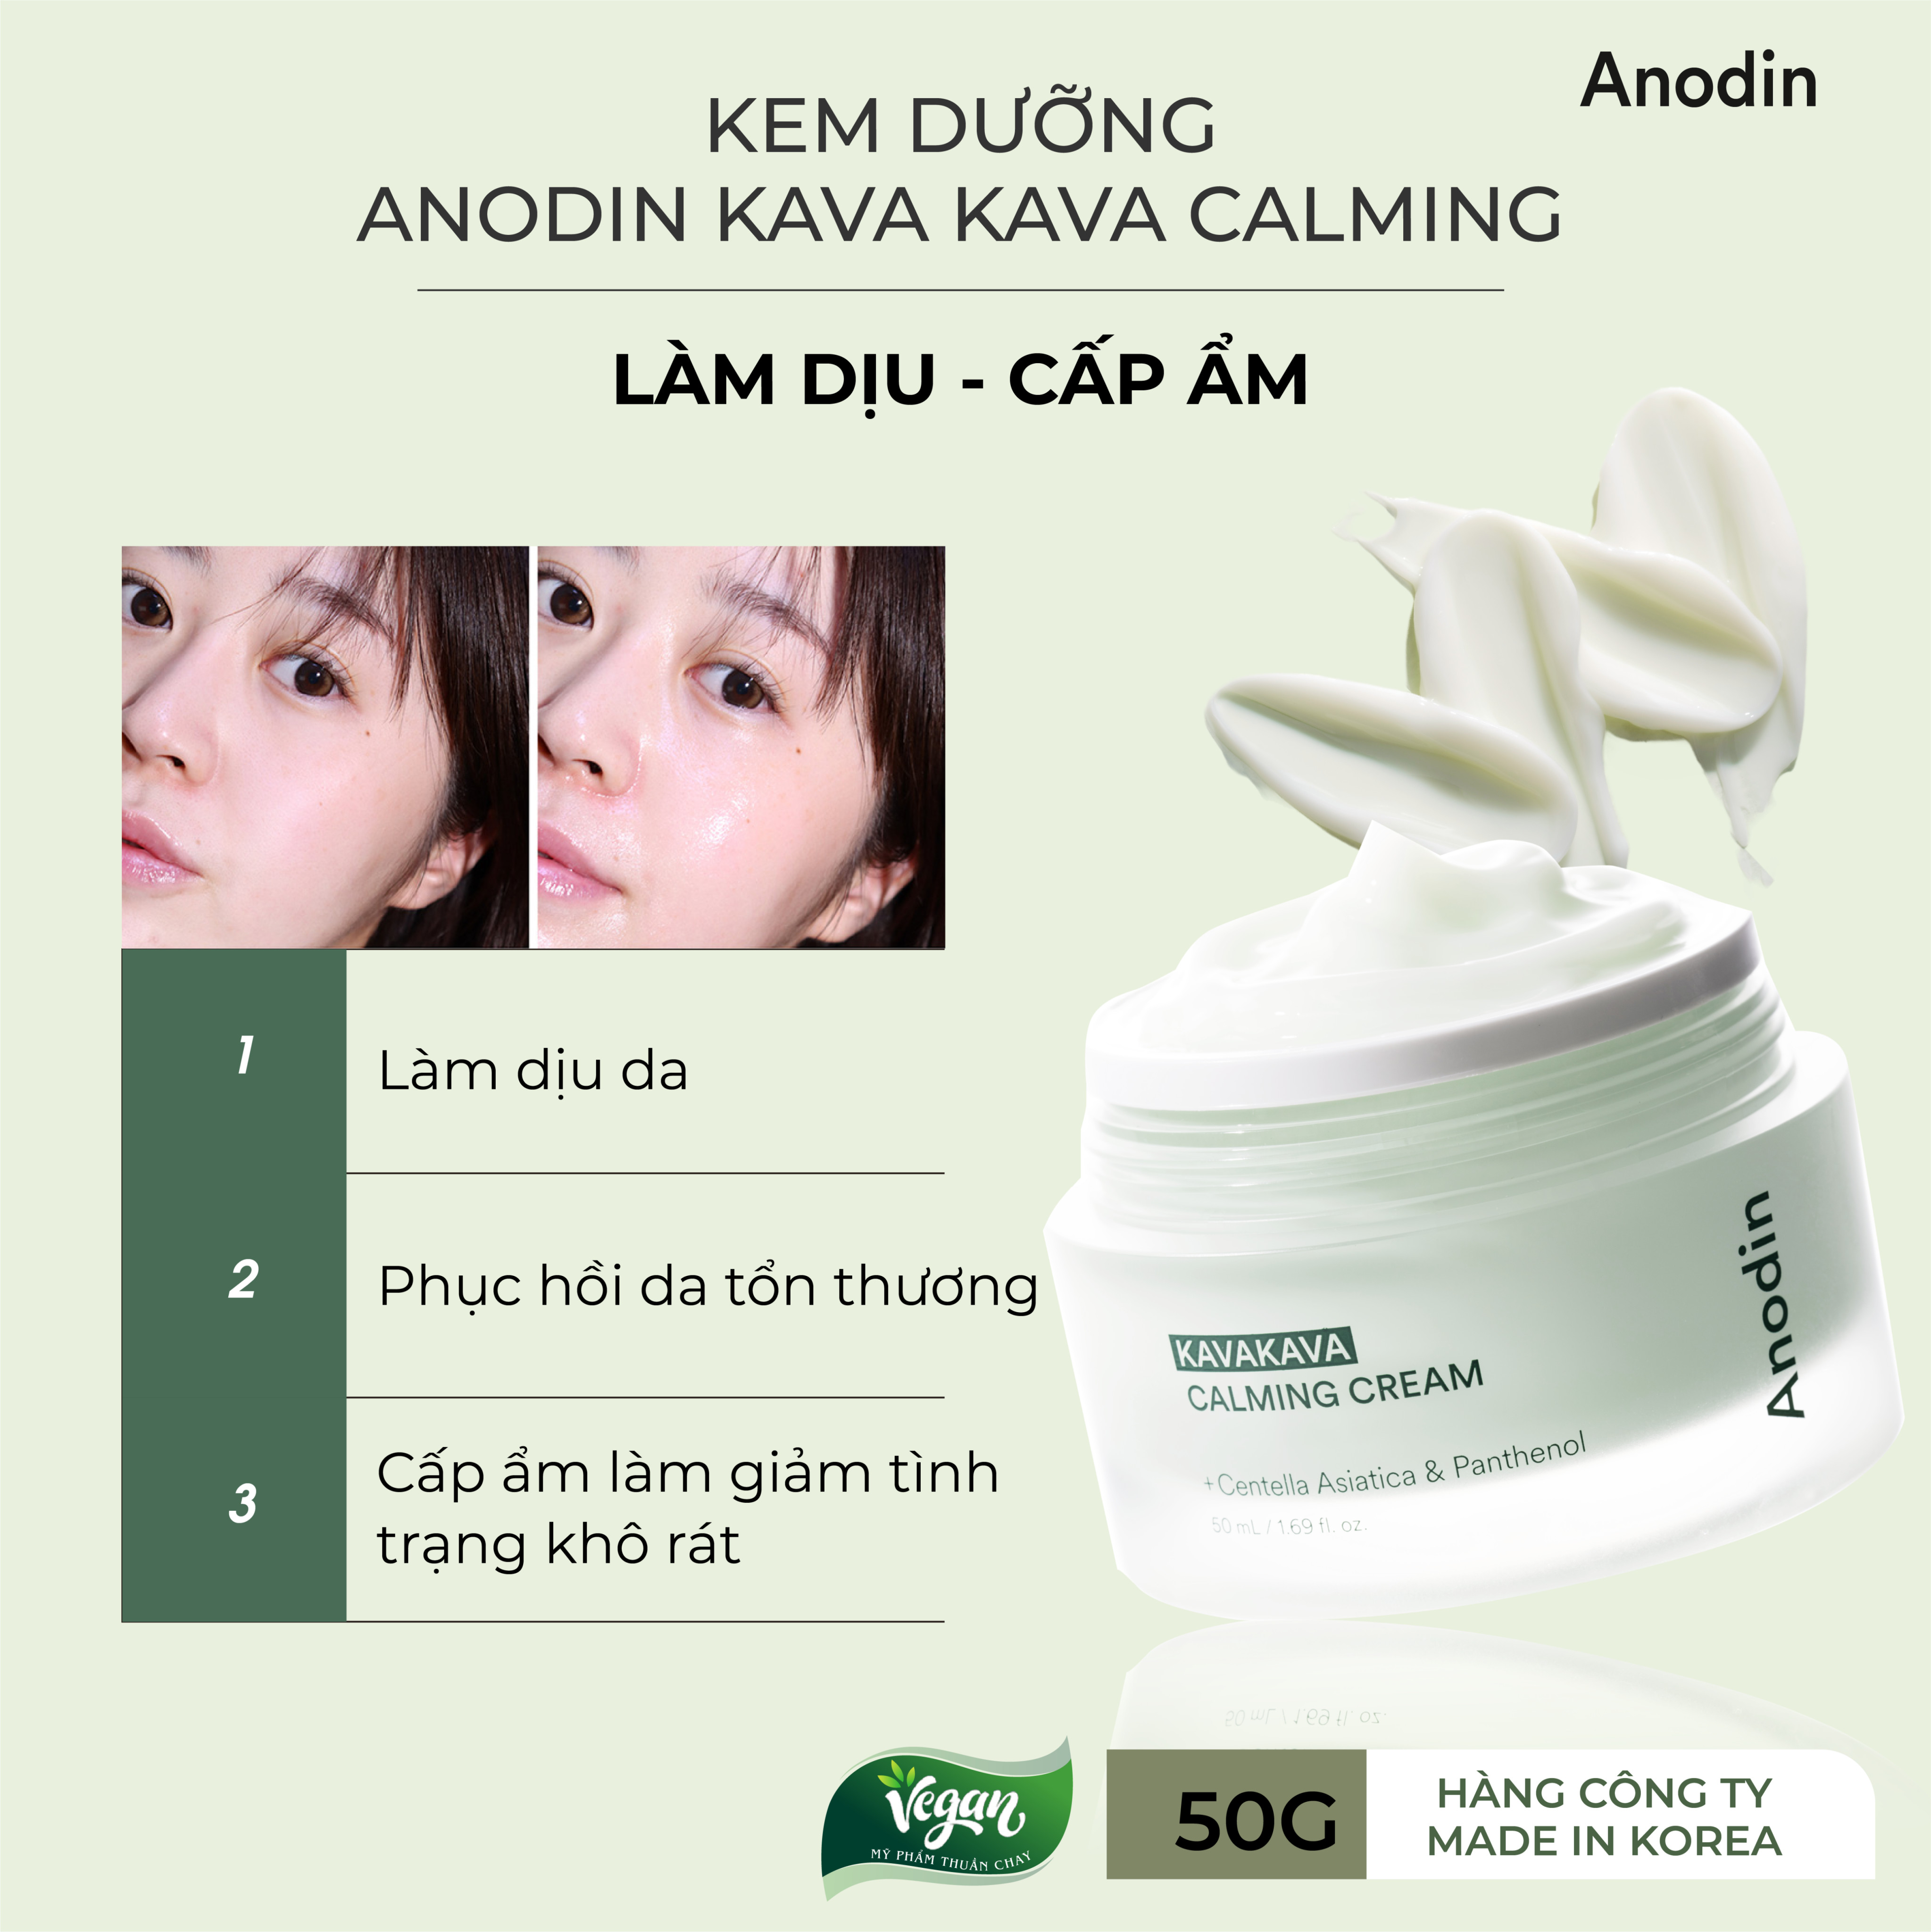 Kem dưỡng siêu cấp ẩm và làm d.ịu da Anodin Kavakava Calming Cream 50g - Hàn Quốc Chính Hãng